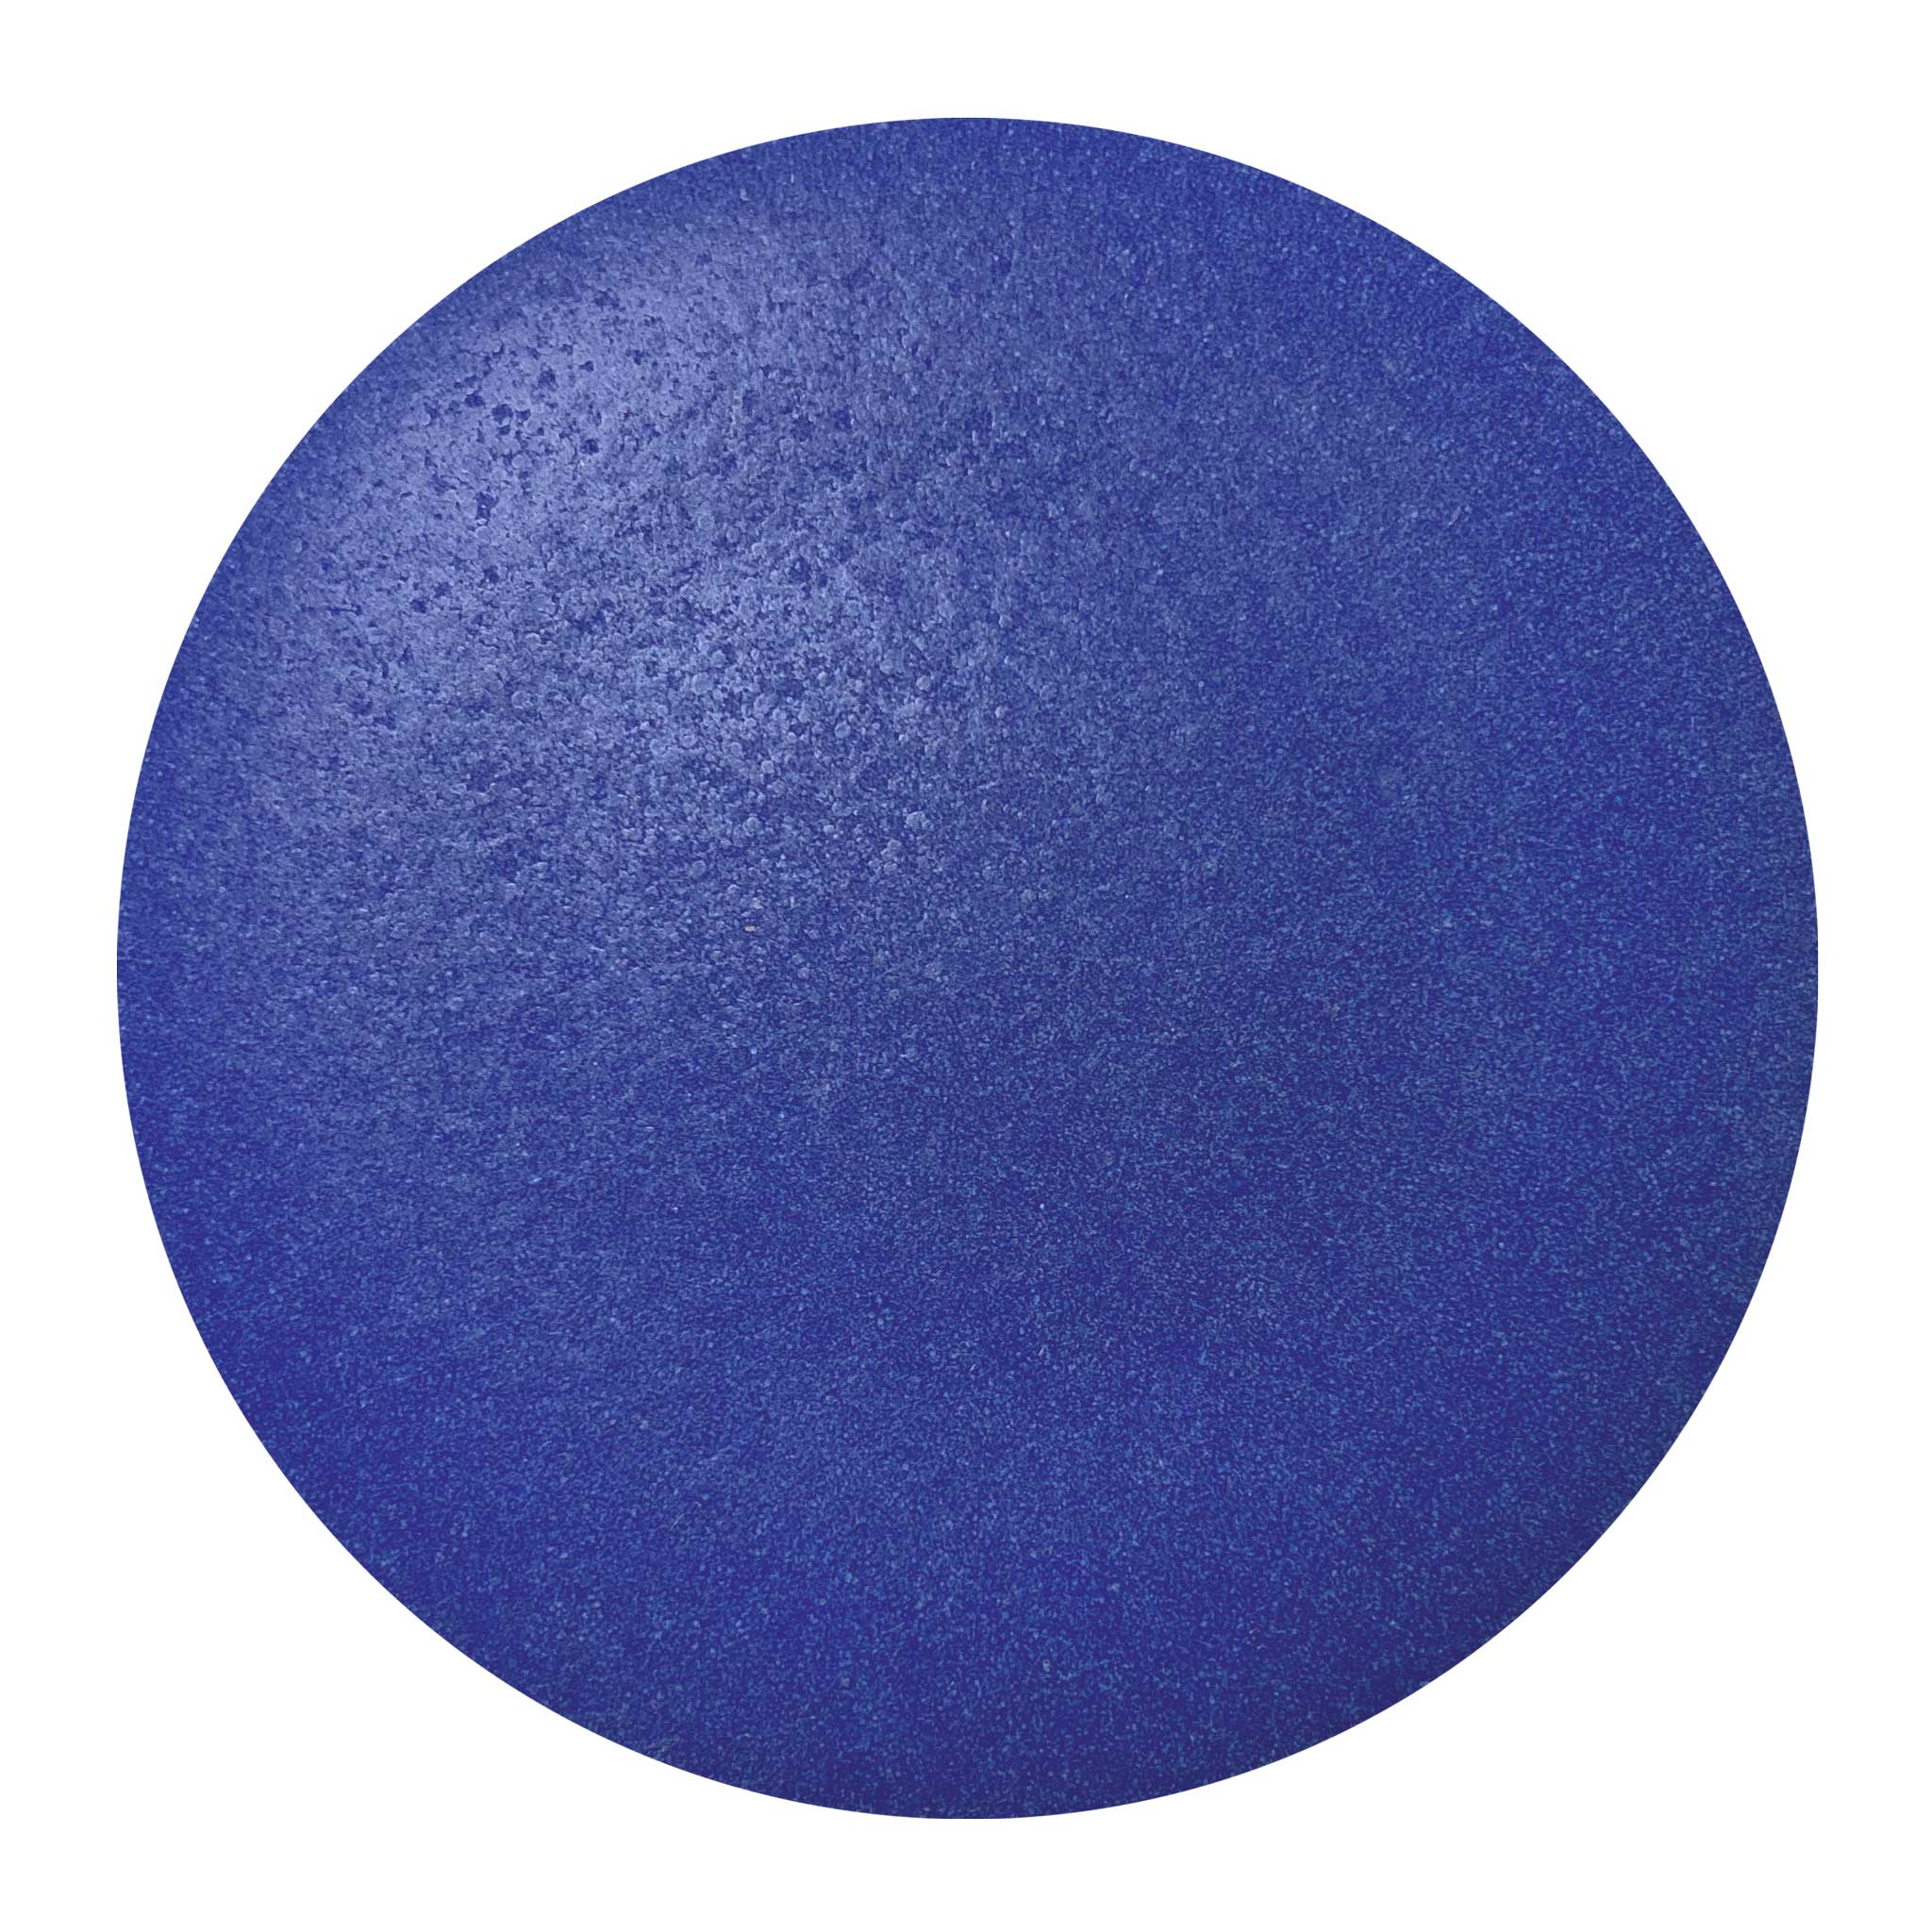 Cobalt Blue Glaze Ceramic